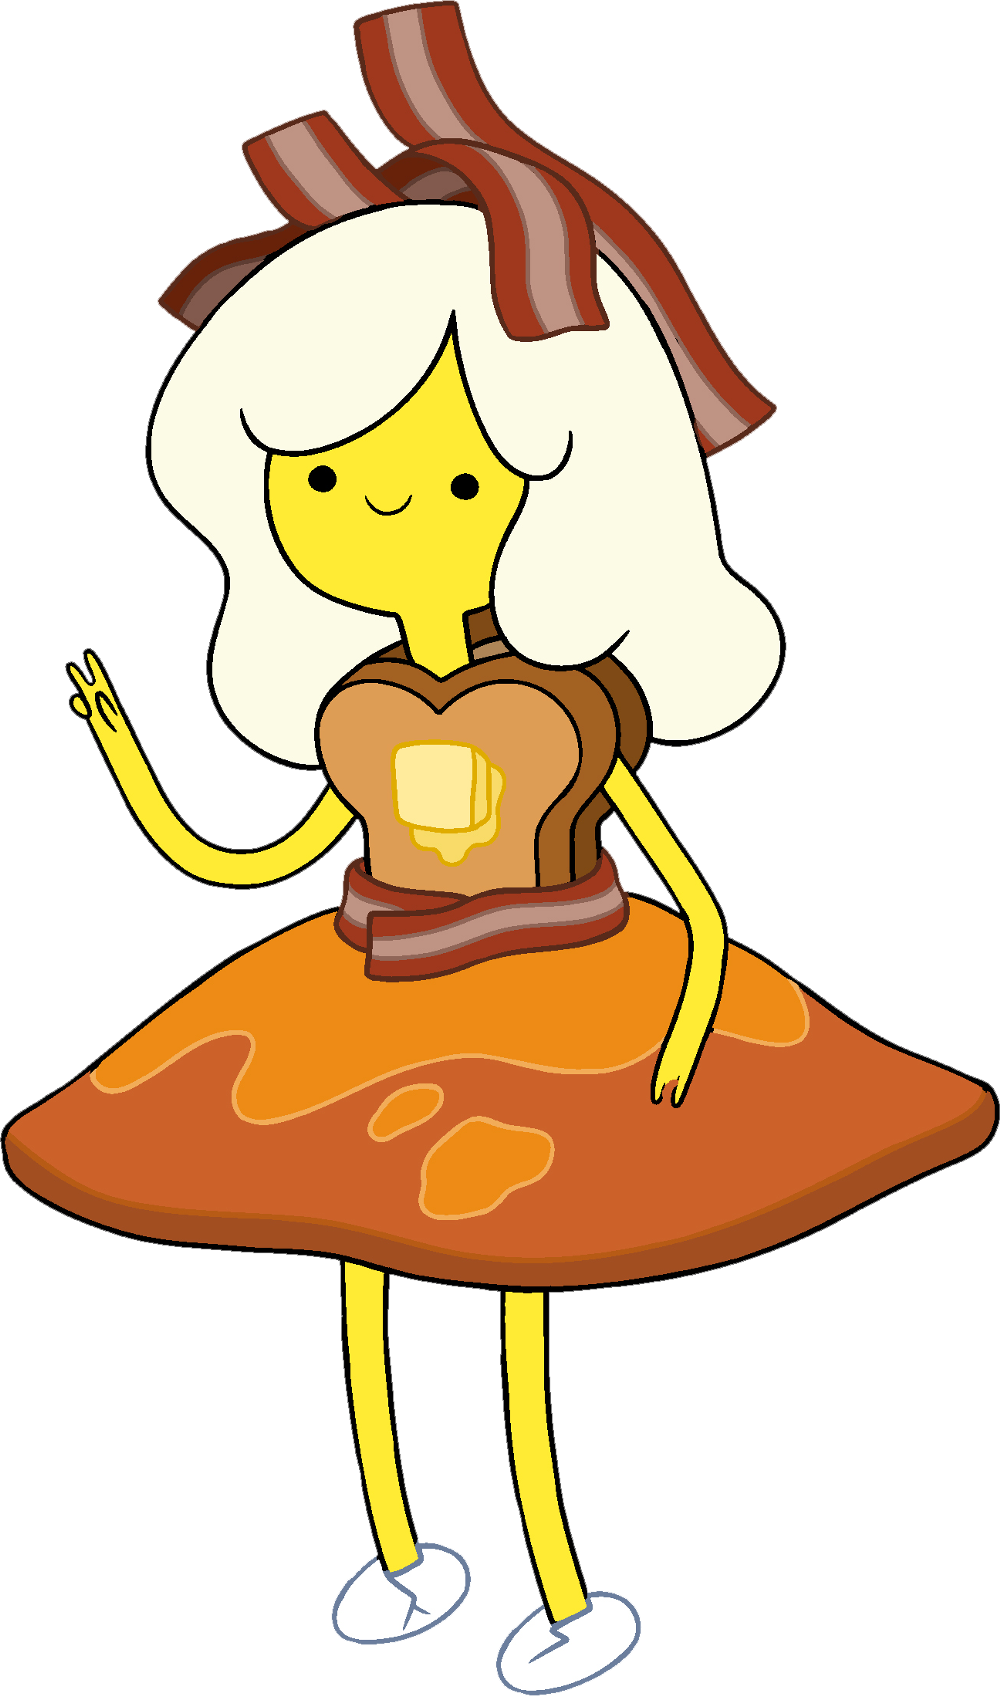 Principessa Colazione Adventure Time Wiki Fandom